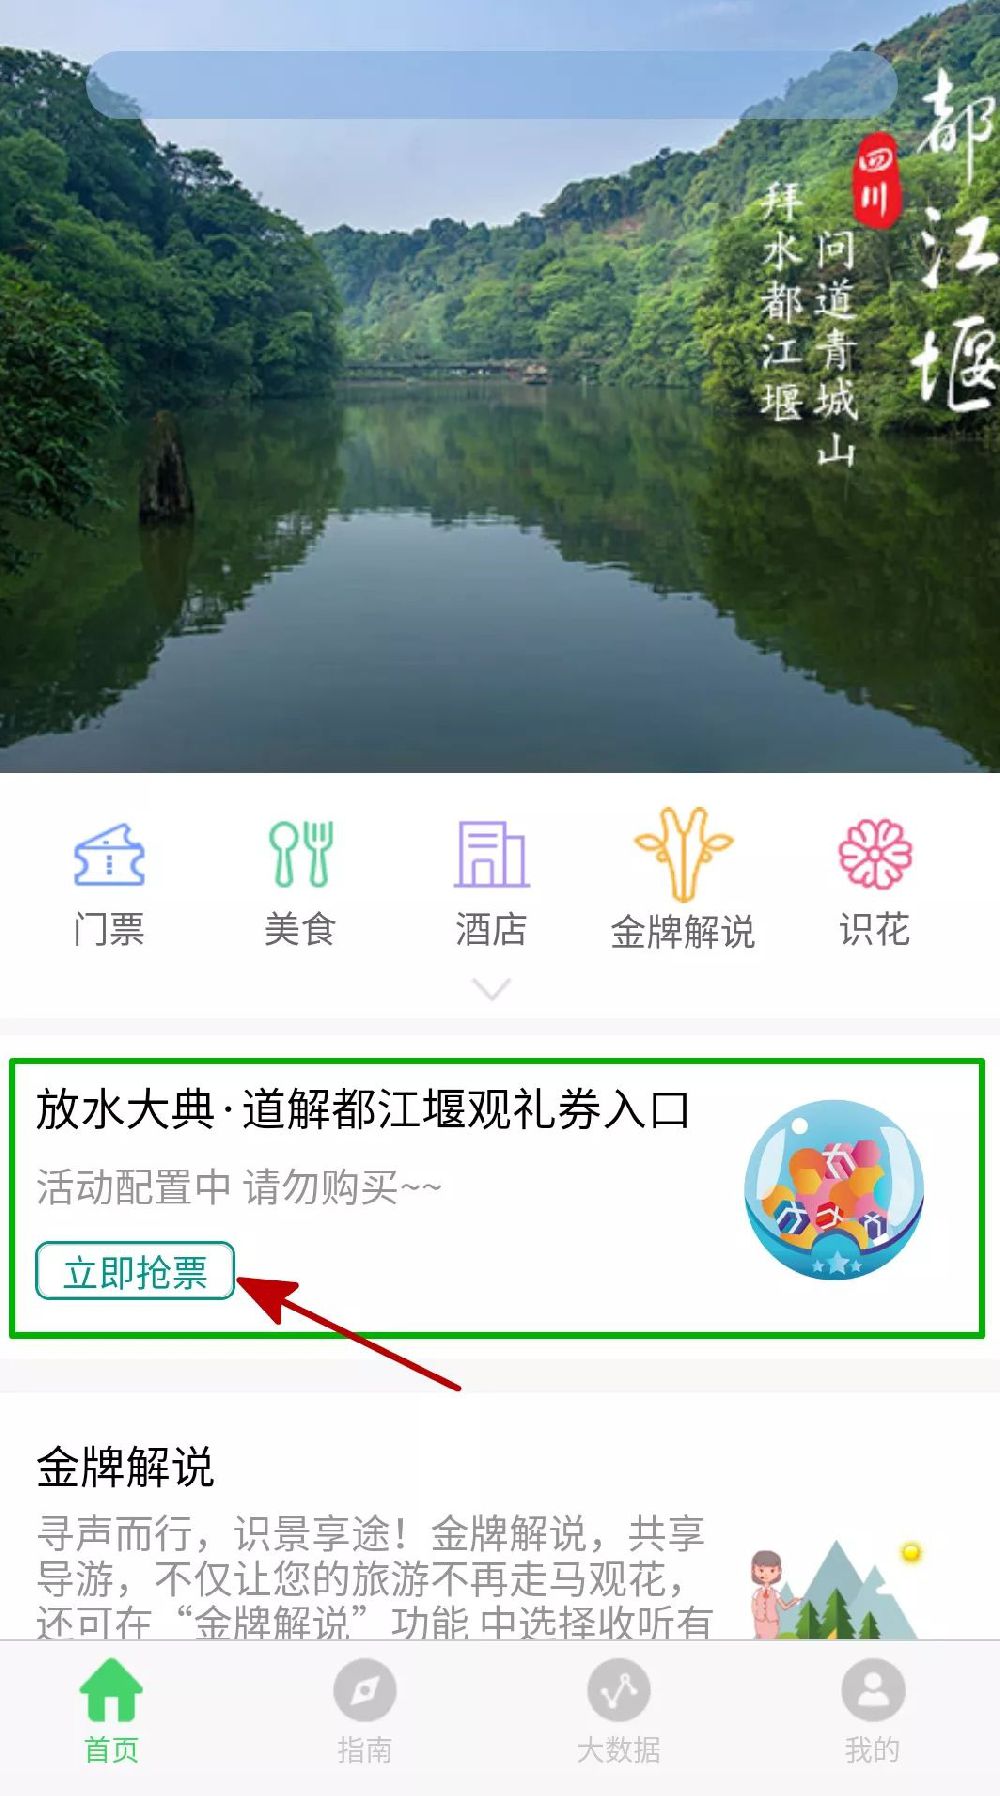 2019年成都都江堰放水节免费门票预约攻略